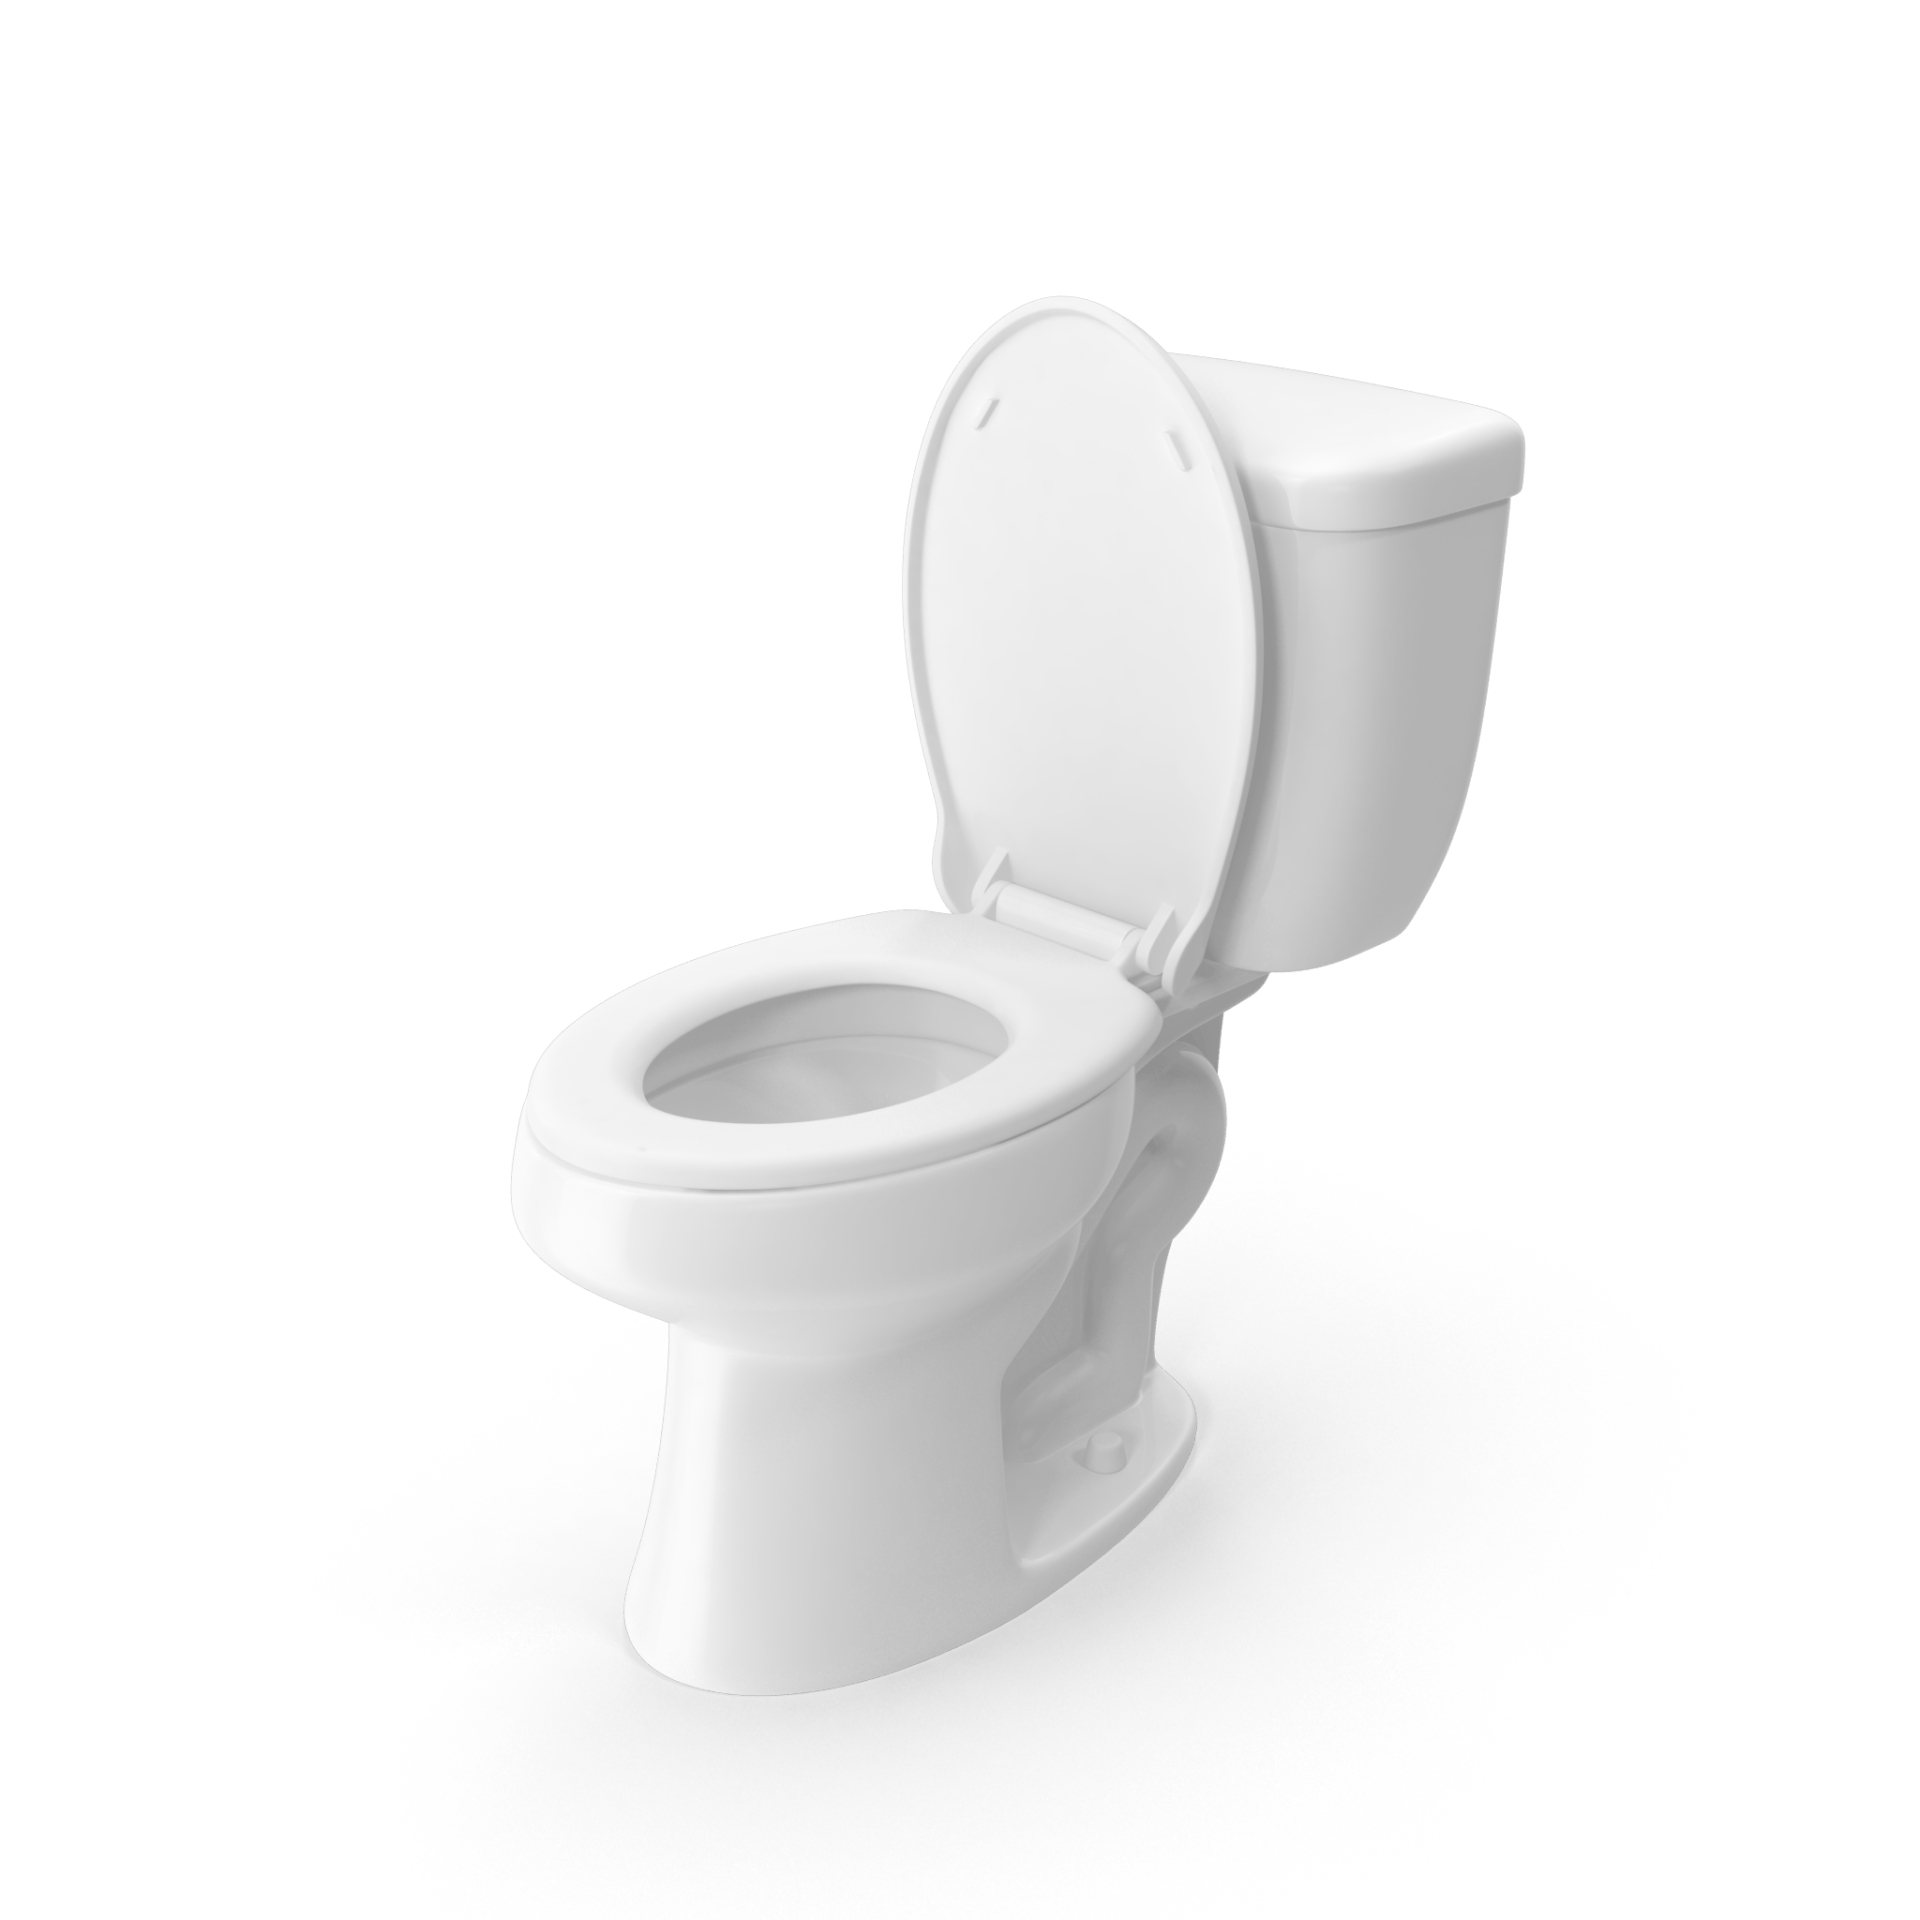 All white toilet